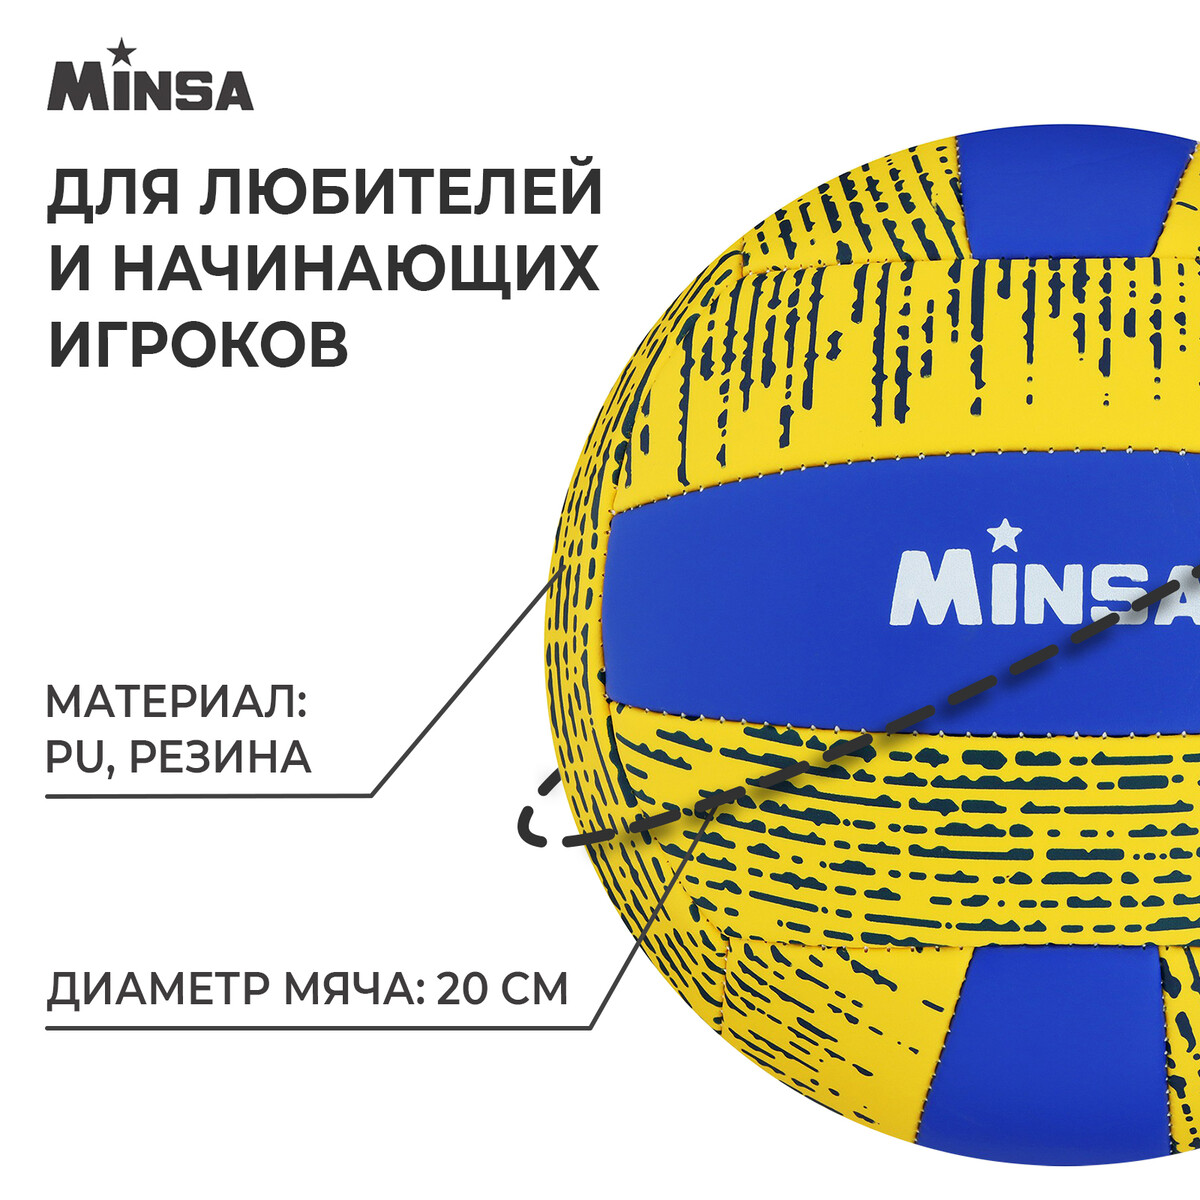 фото Мяч волейбольный minsa, pu, машинная сшивка, 18 панелей, р. 5